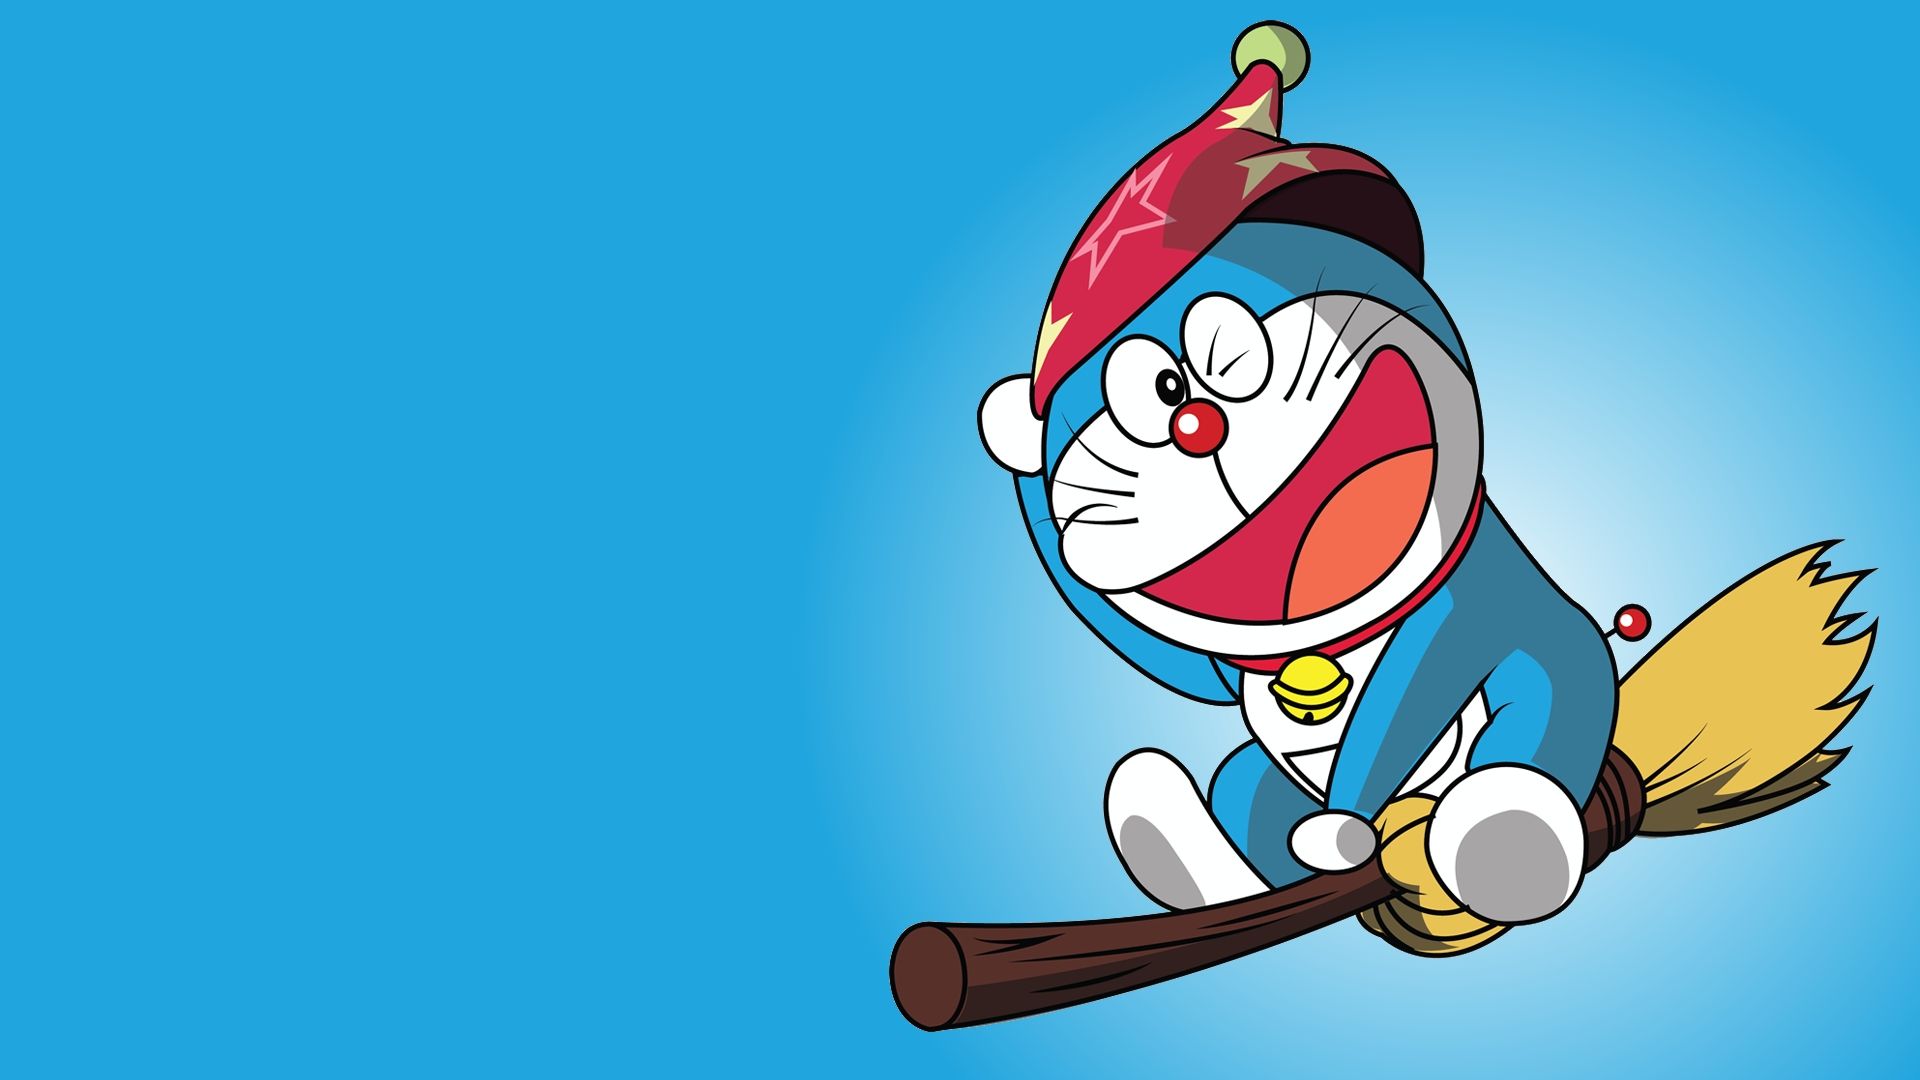 Hình nền Doraemon PC sẽ đem đến cho bạn một không gian làm việc hoàn toàn mới. Với các hình ảnh siêu cute, bạn sẽ luôn động viên và làm việc hiệu quả hơn. Nào, hãy thay đổi hình nền của bạn và trải nghiệm sự khác biệt!